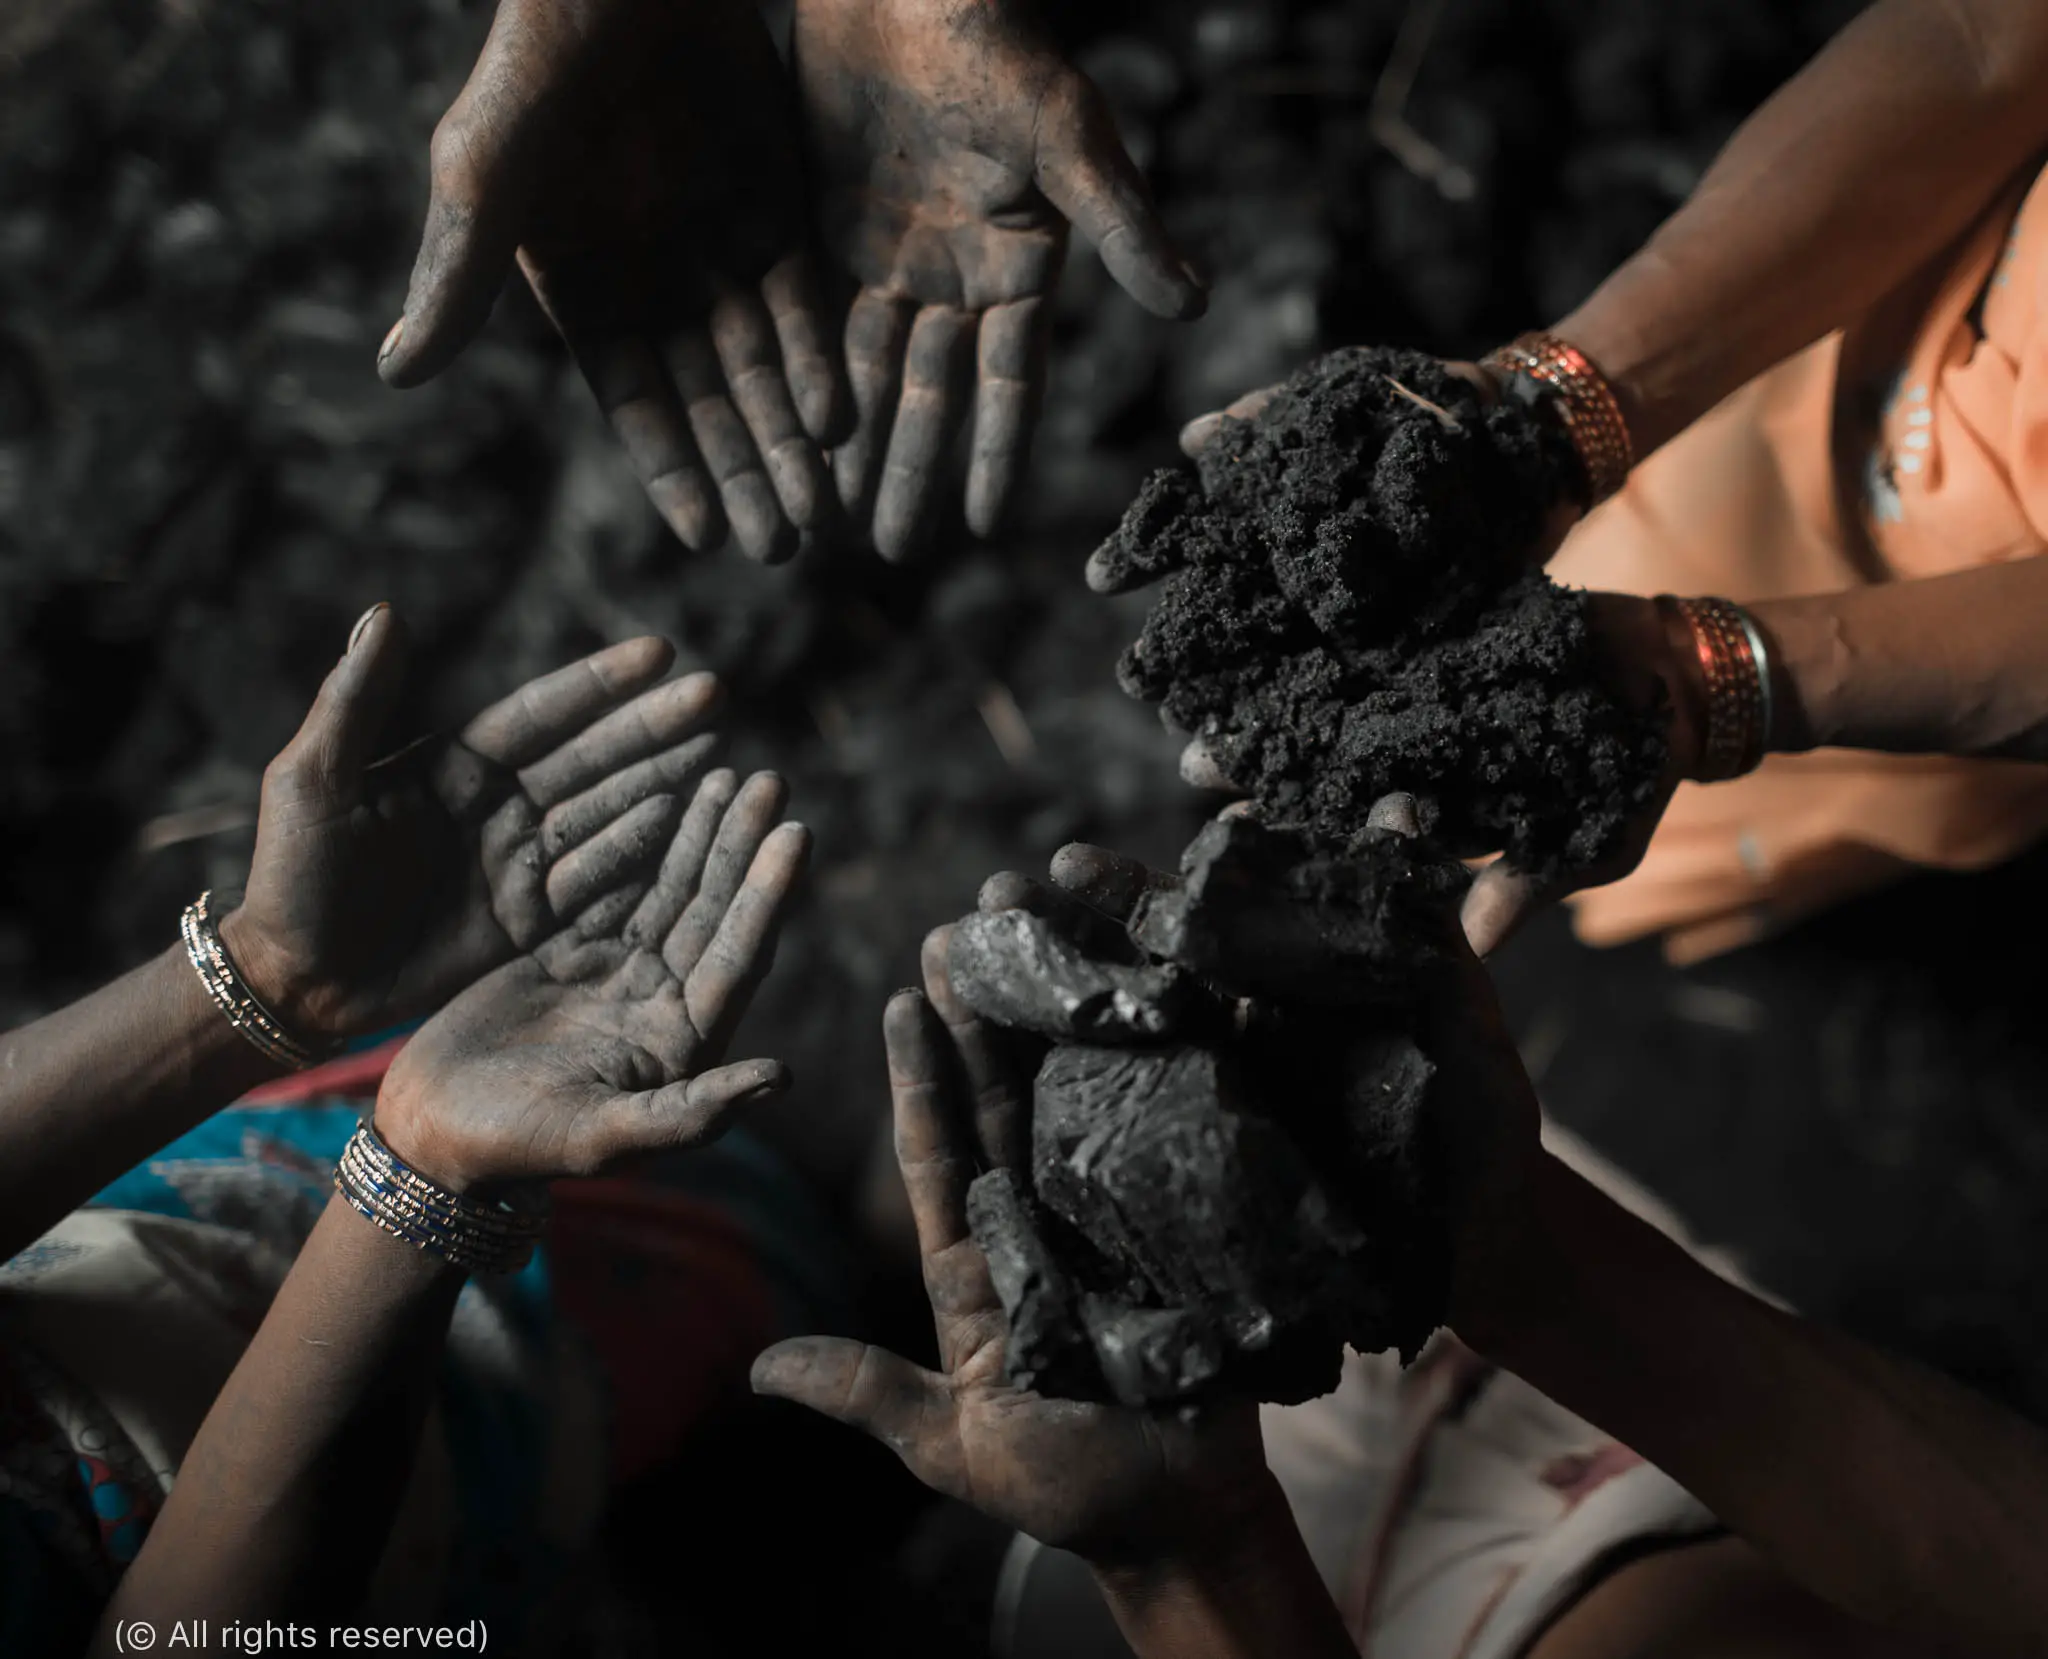 Des victimes de la traite des personnes exhibent leurs mains noircies par le charbon qu’elles sont contraintes d’extraire pour rembourser leurs dettes. Parfois, les propriétaires miniers forcent des familles entières à travailler pendant toute leur vie pour rembourser une dette. (© Tous droits réservés)